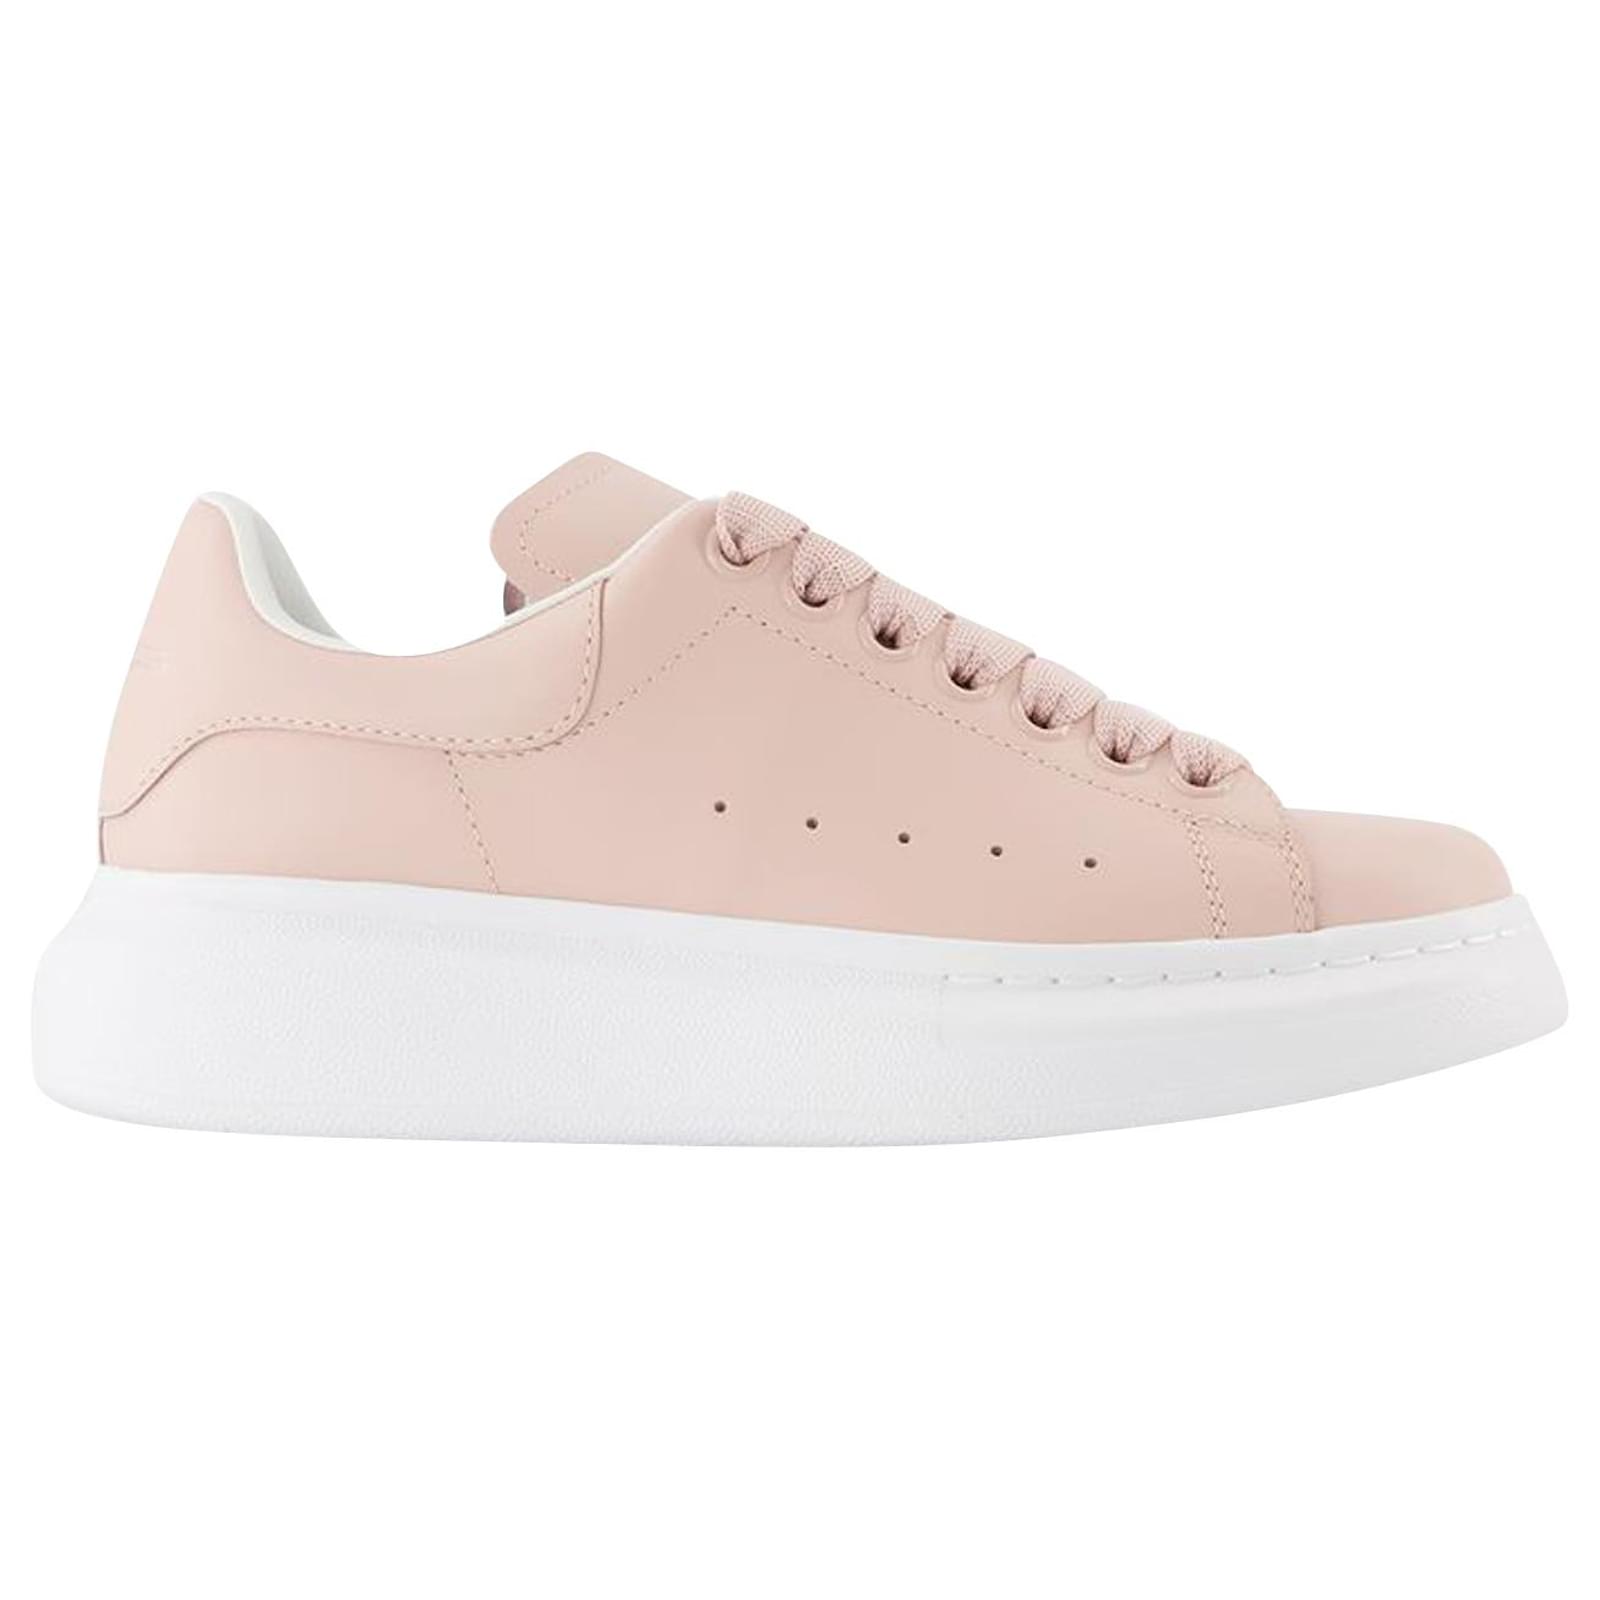 Oversized Sneakers - Alexander Mcqueen - Pink Leather - Closet